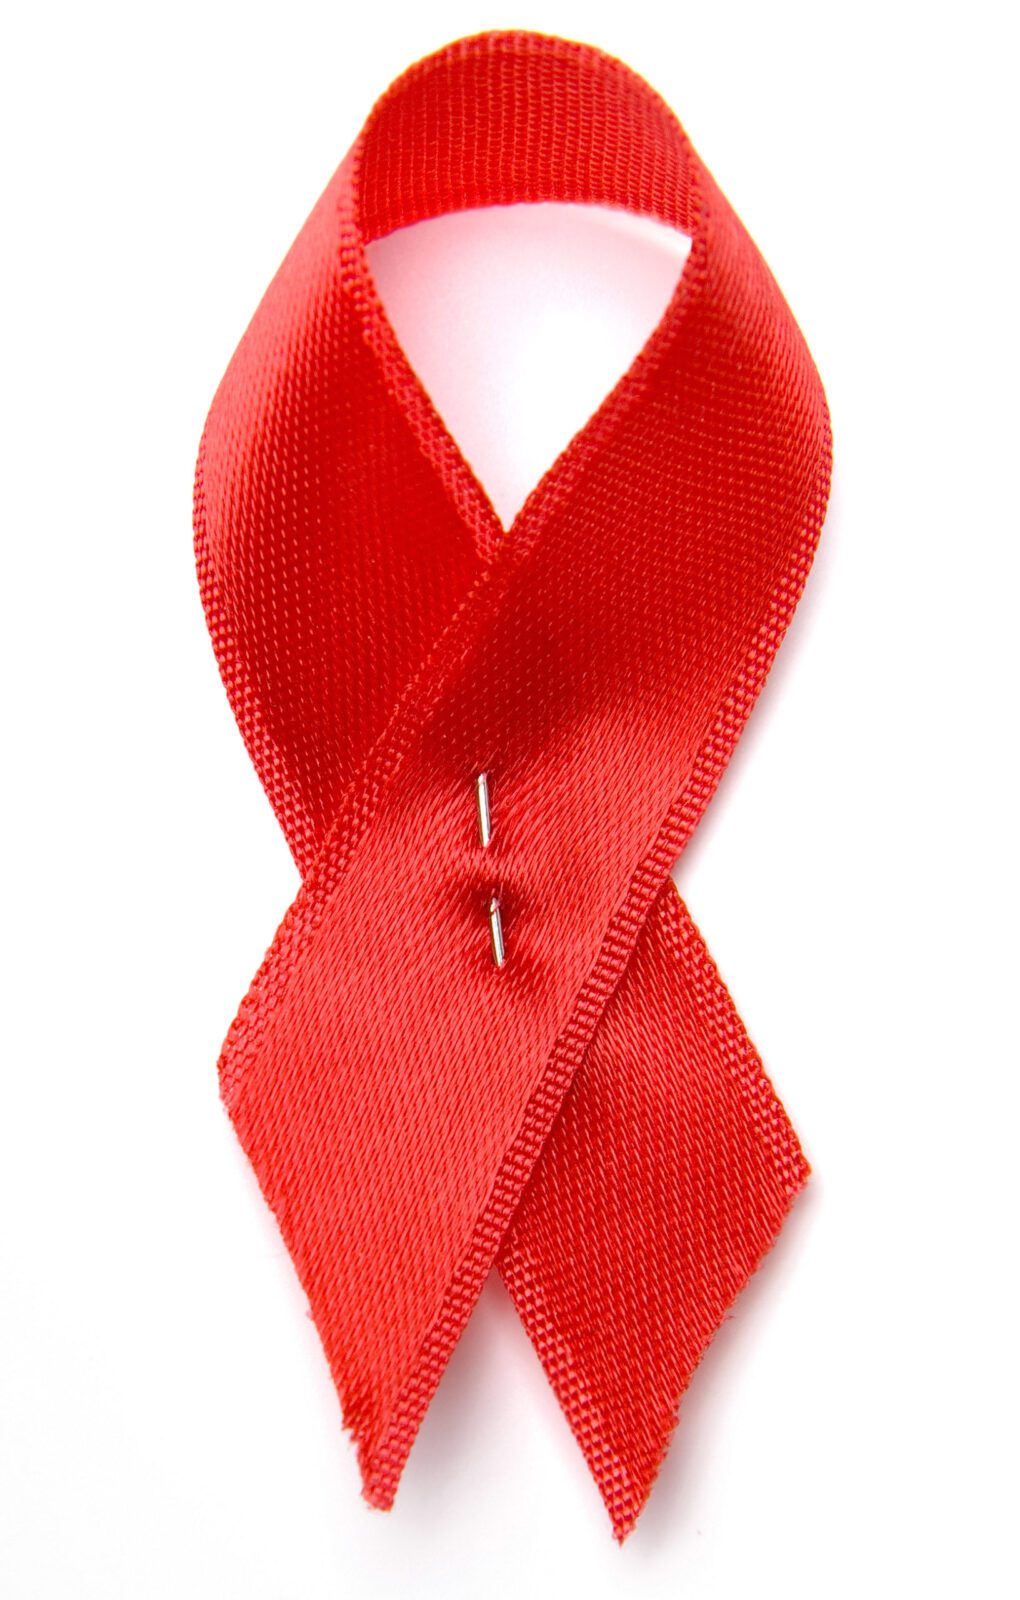 Raising Awareness And Fighting Stigma This World AIDS Day